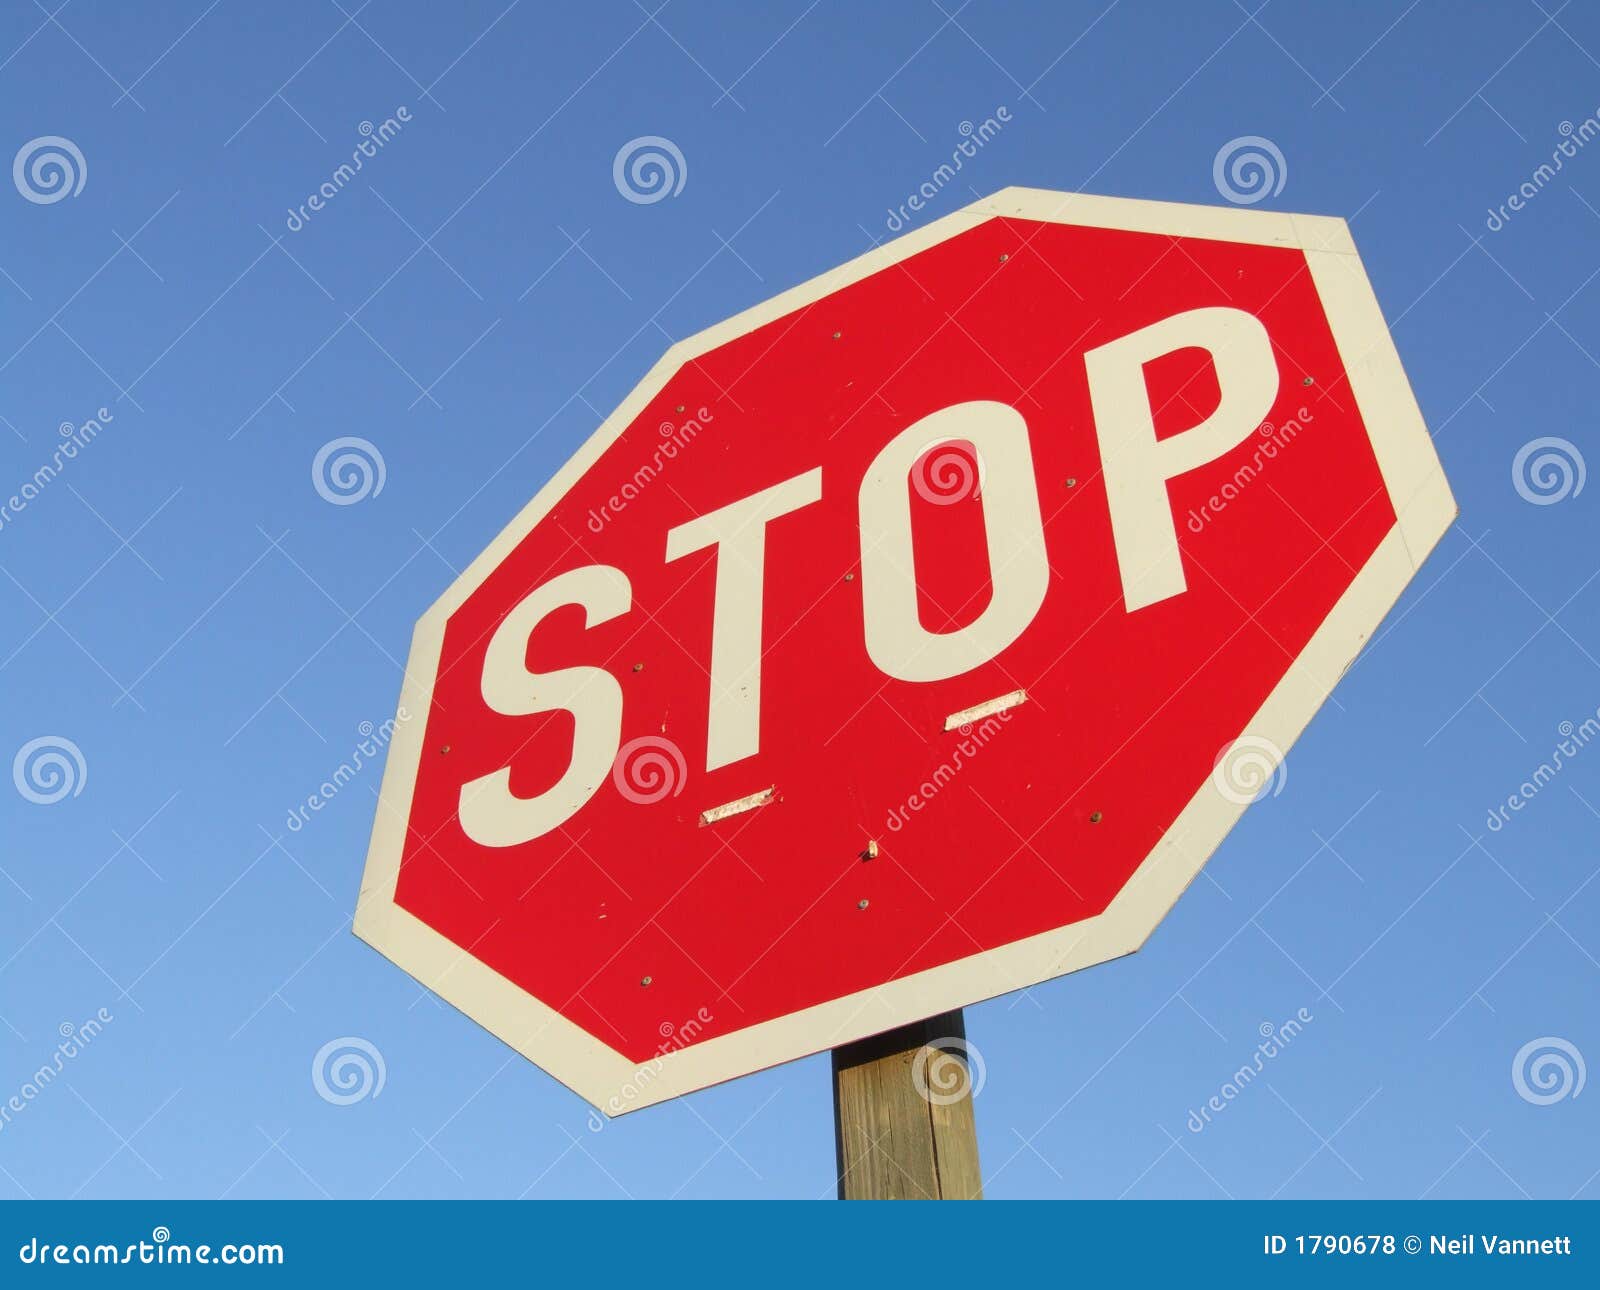 roadside stop sign